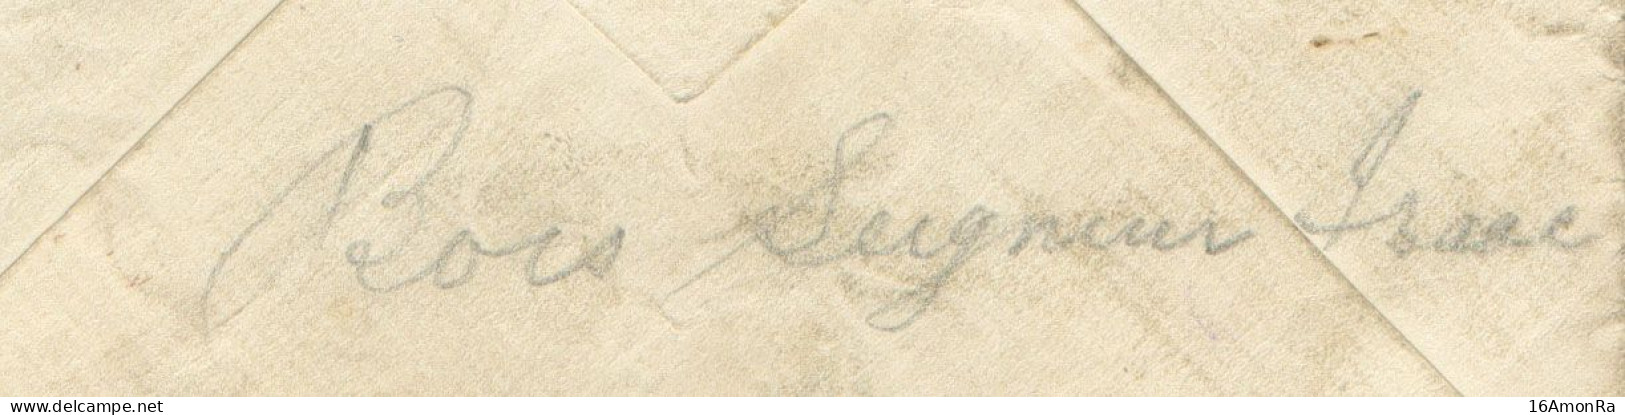 Enveloppe écrite Par Un Belge De Bois-Seigneur-Isaac (près Lillois Et Waterloo) Pour Compte D'un Prisonnier Britannique - Army: Belgium